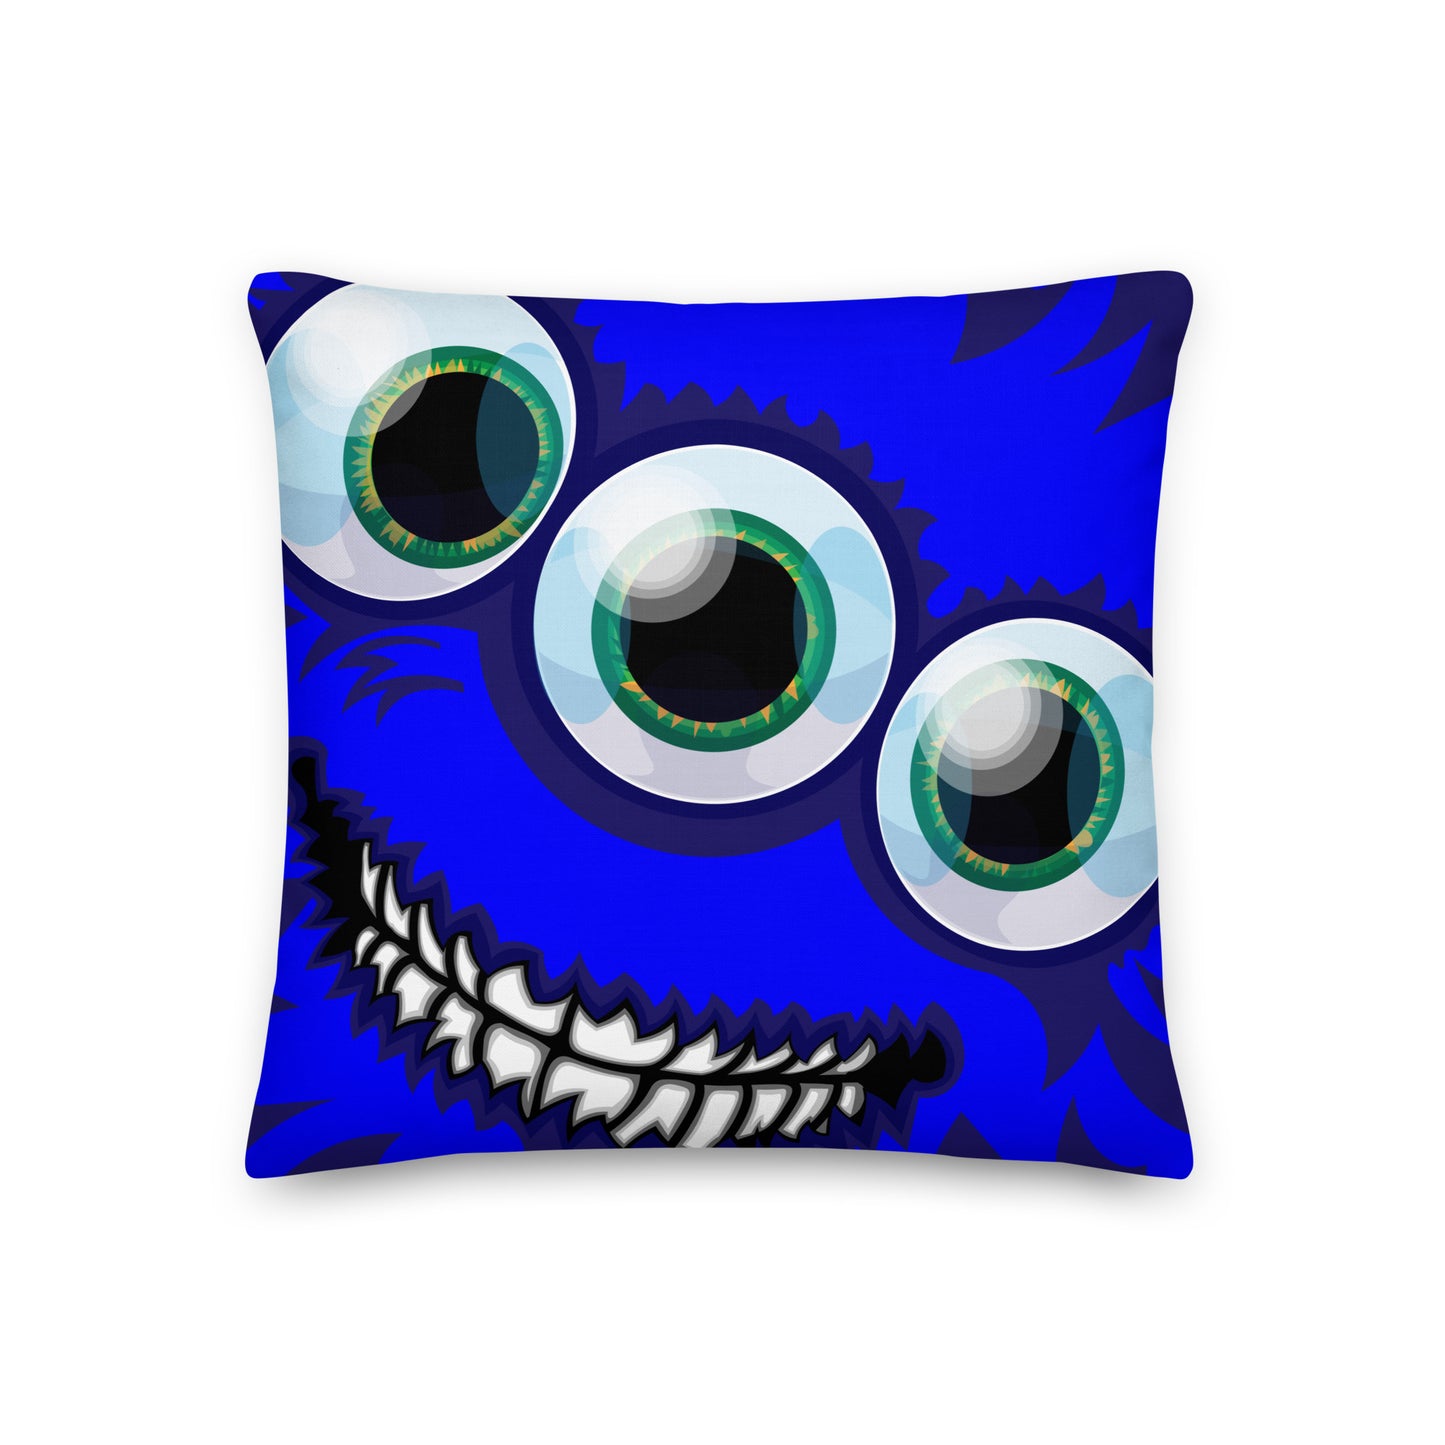 BLOOEY MAGOOEY - Pillow monster